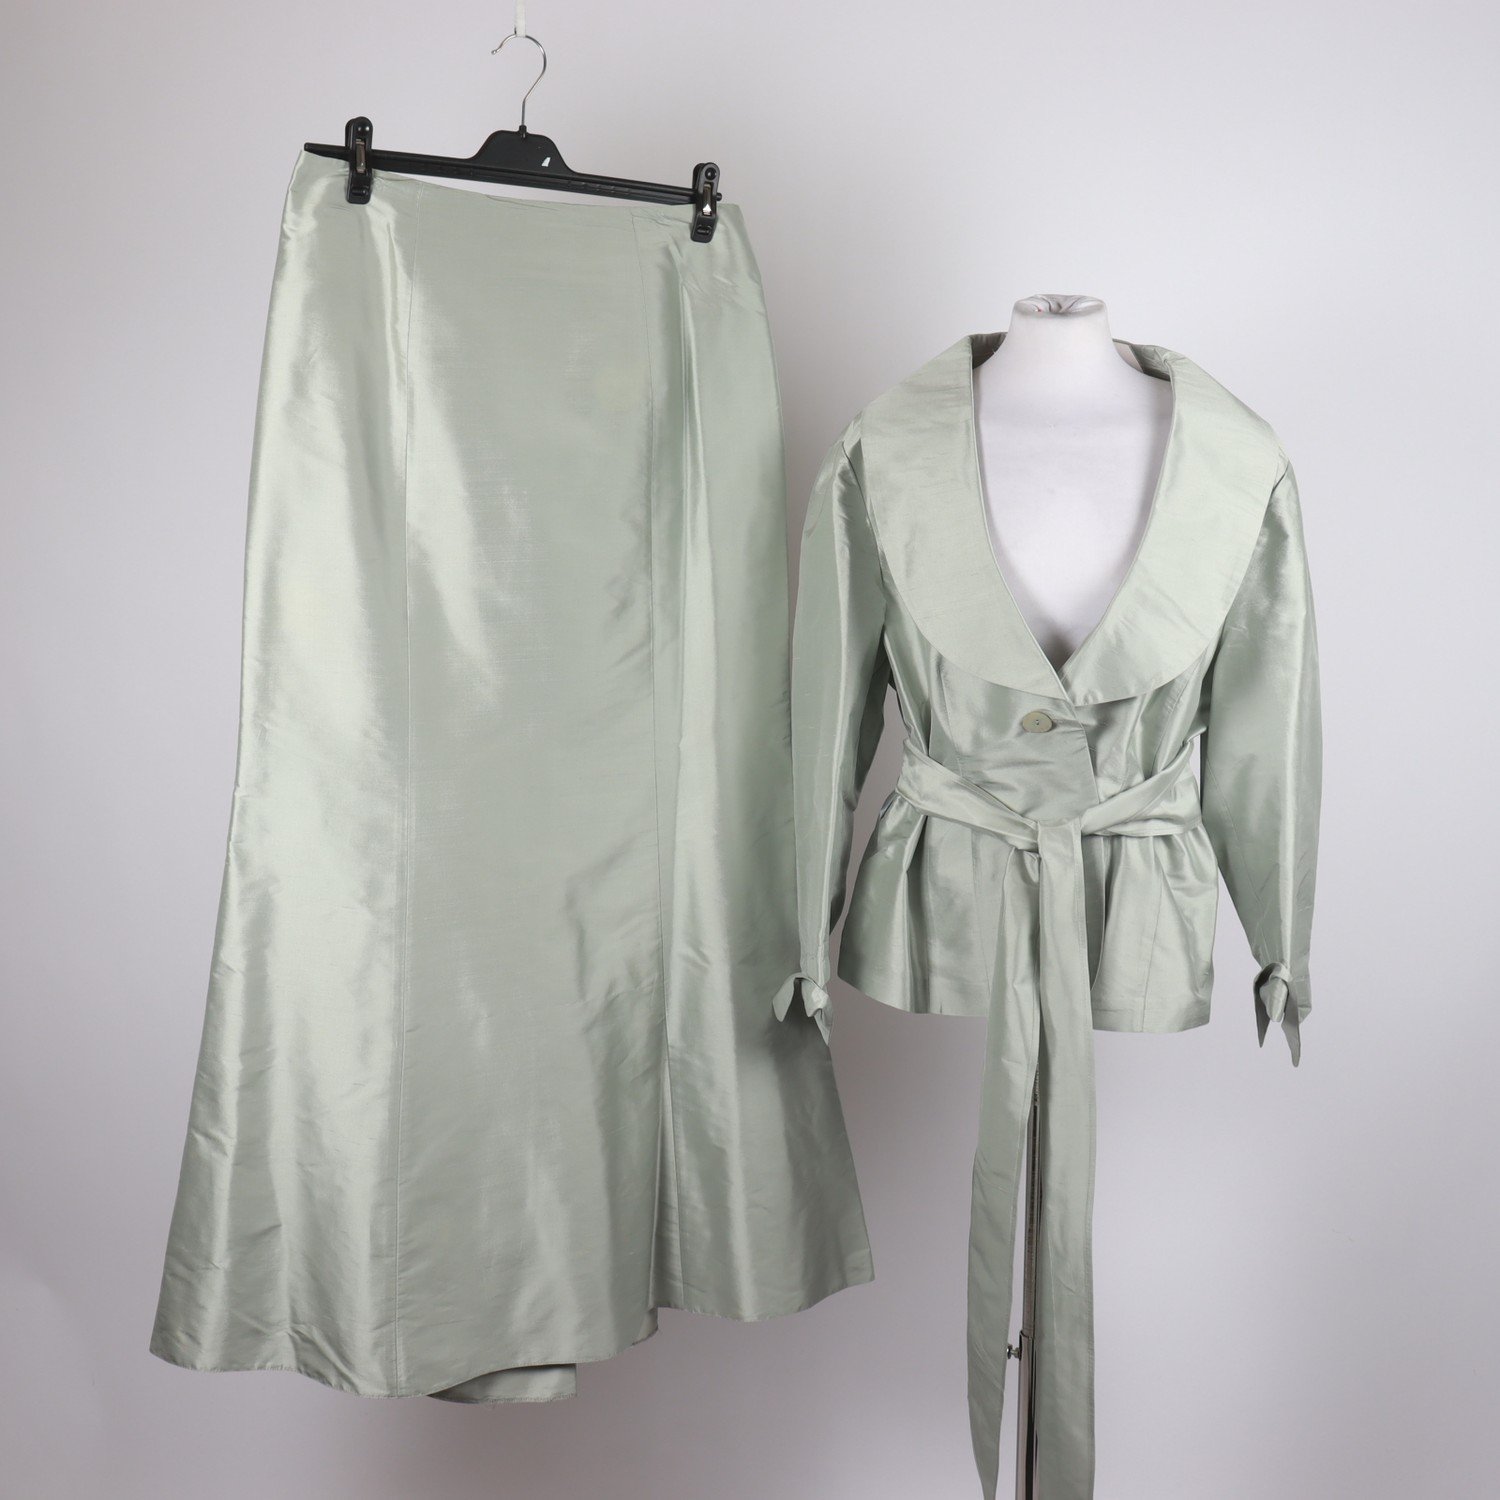 Dräkt, Ril´s, mintgrön, 100 % silk, stl. 46 kavaj, stl. 44 kjol